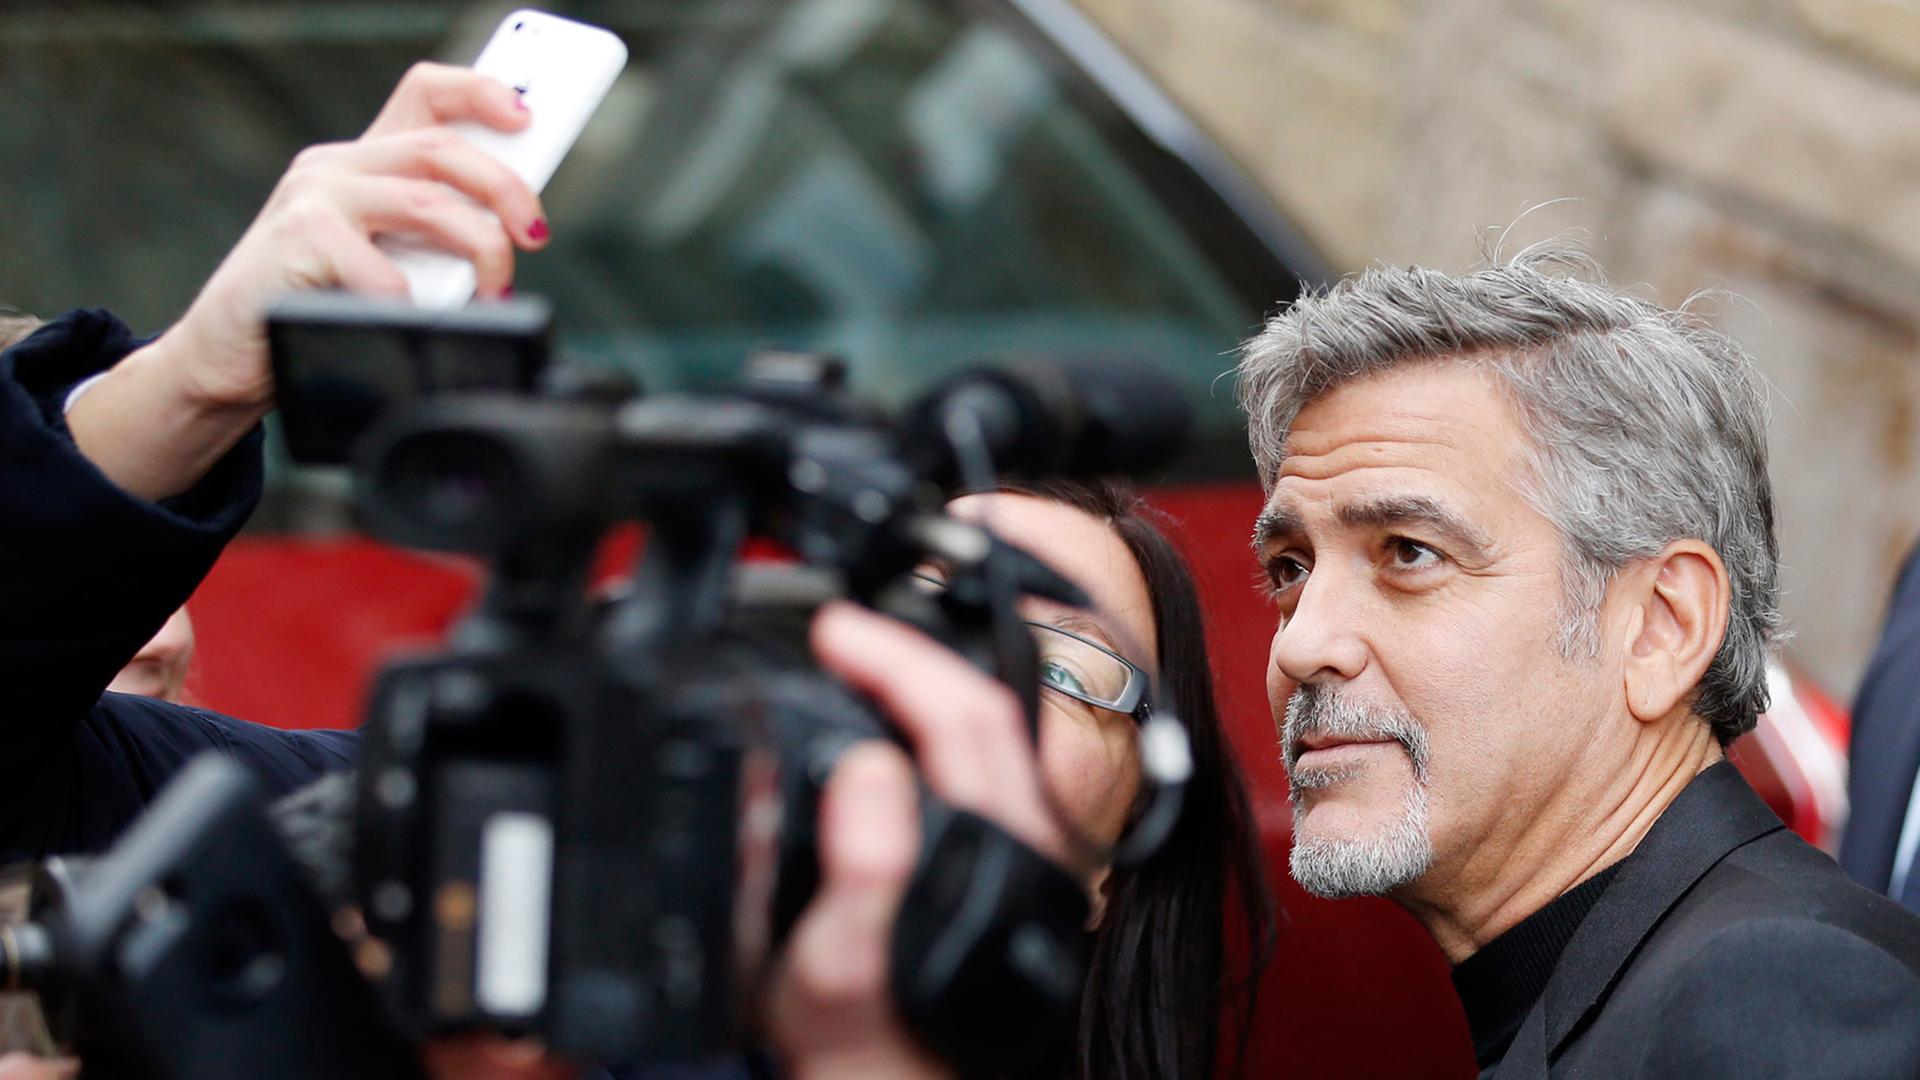 Der Schauspieler George Clooney posiert außerhalb des Social Bite Cafés in Edinburgh, Schottland, im November 2015 für Fotografen.